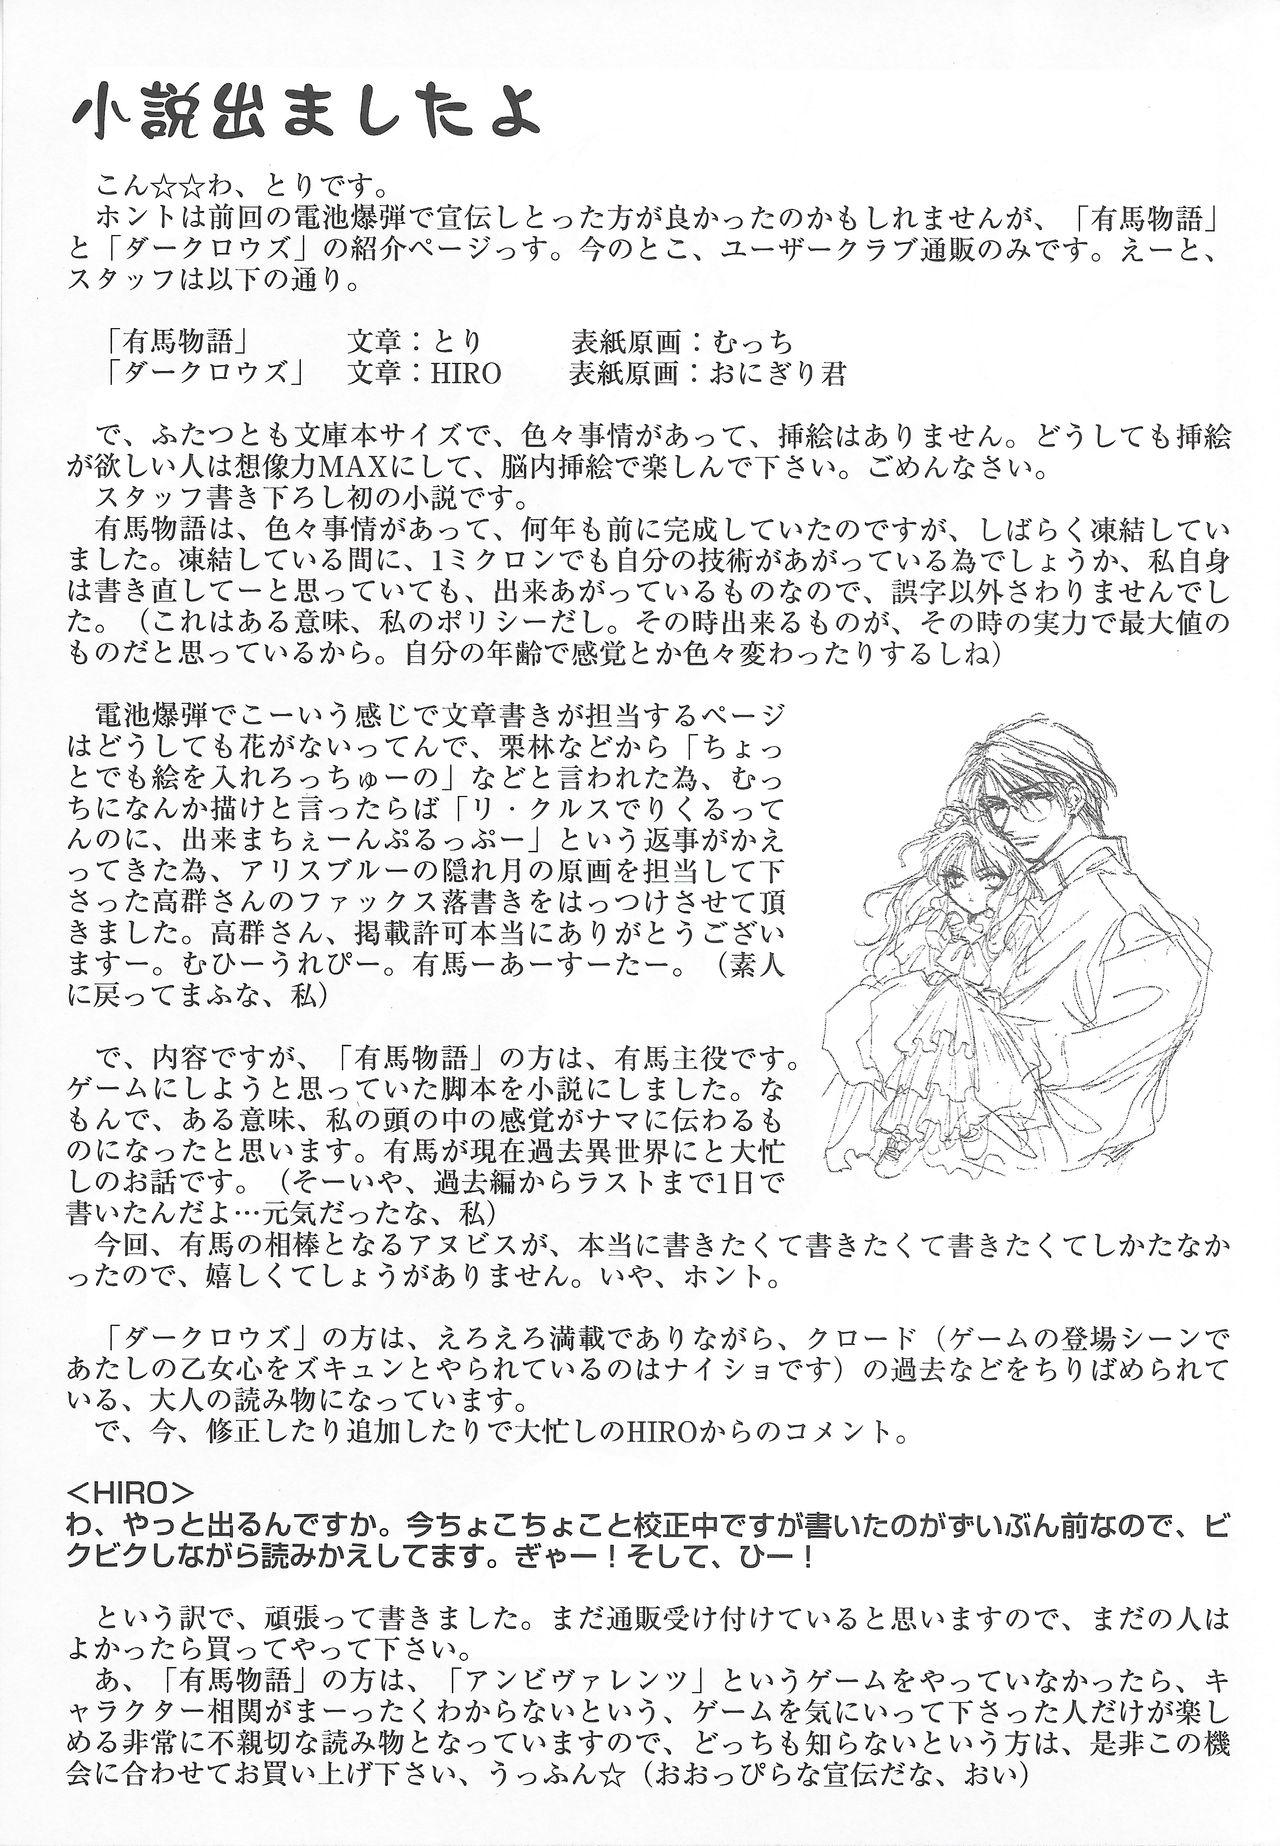 Arisu no Denchi Bakudan Vol. 18 11